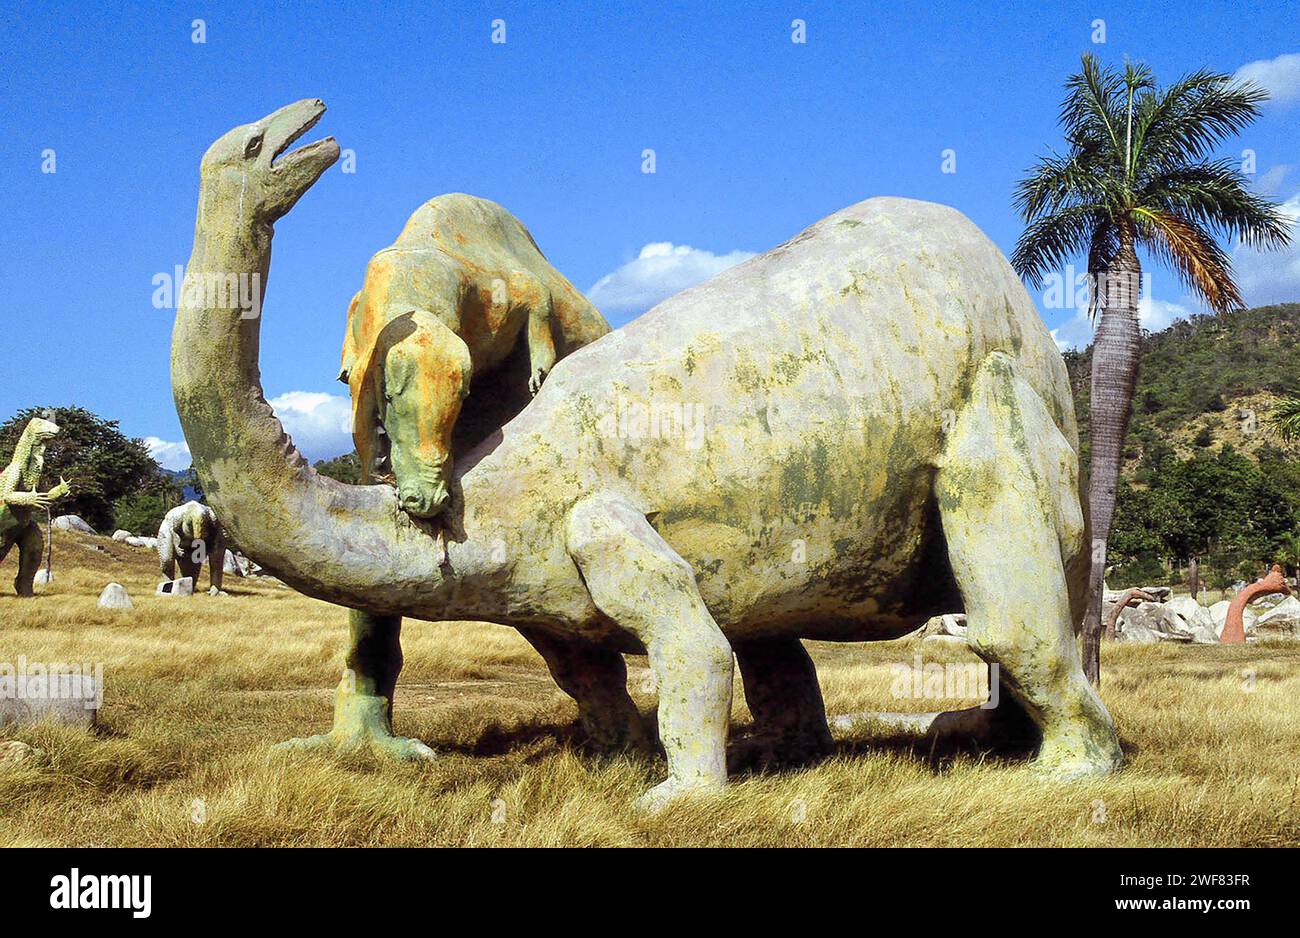 Giant concrete dinosaurs populate a valley in Baconao Park near Santiago de Cuba. Stock Photo